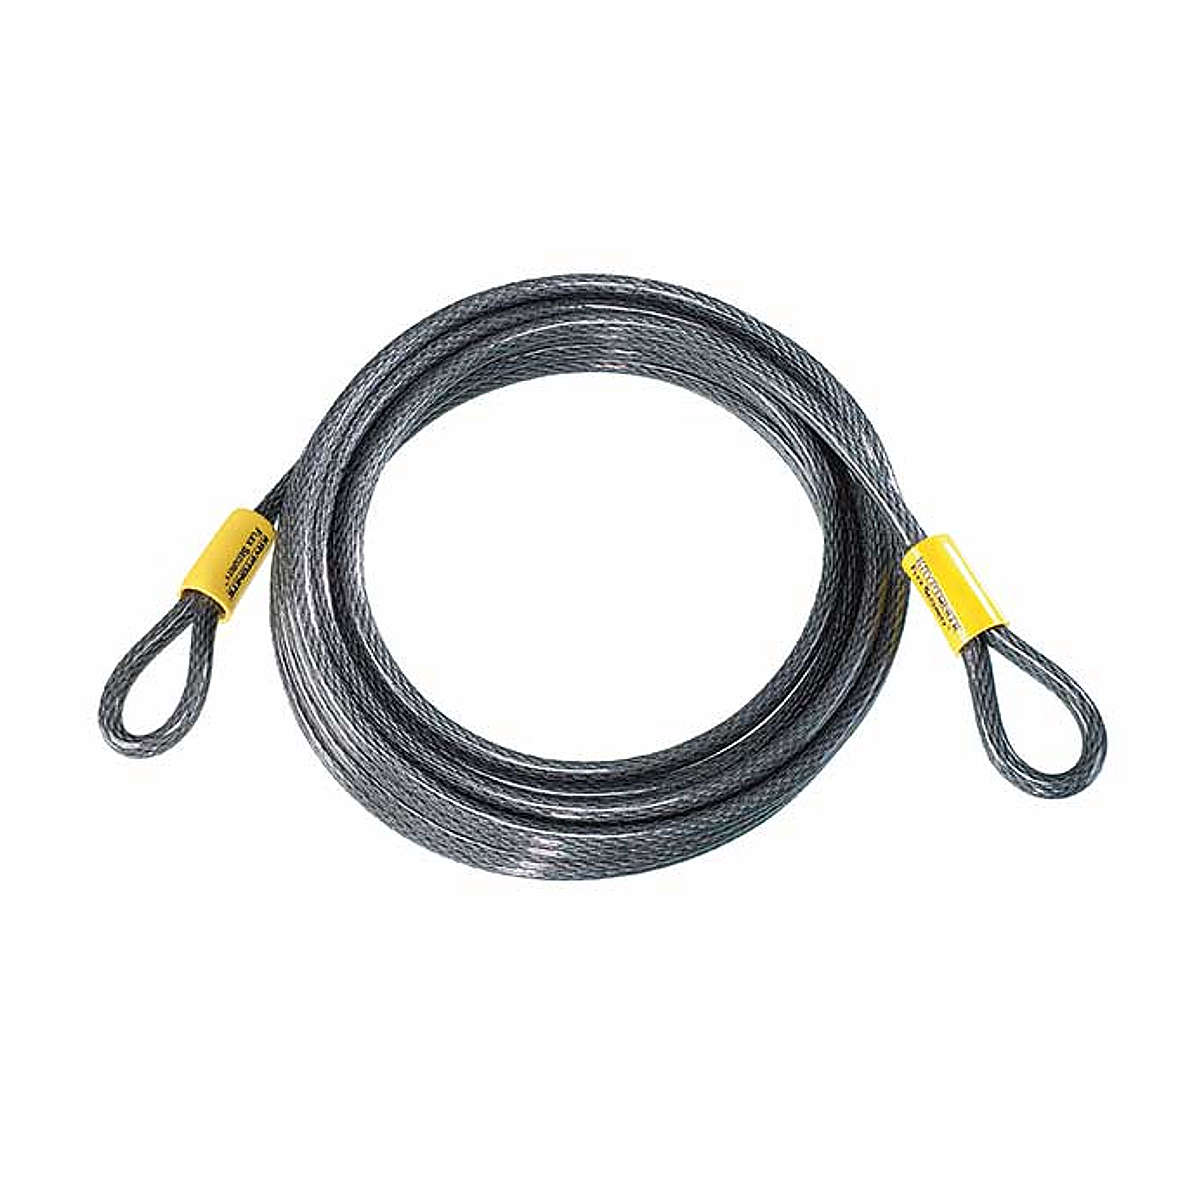 Kryptonite Kabel für Kabelschloss Kryptoflex 3010 Looped 930 cm